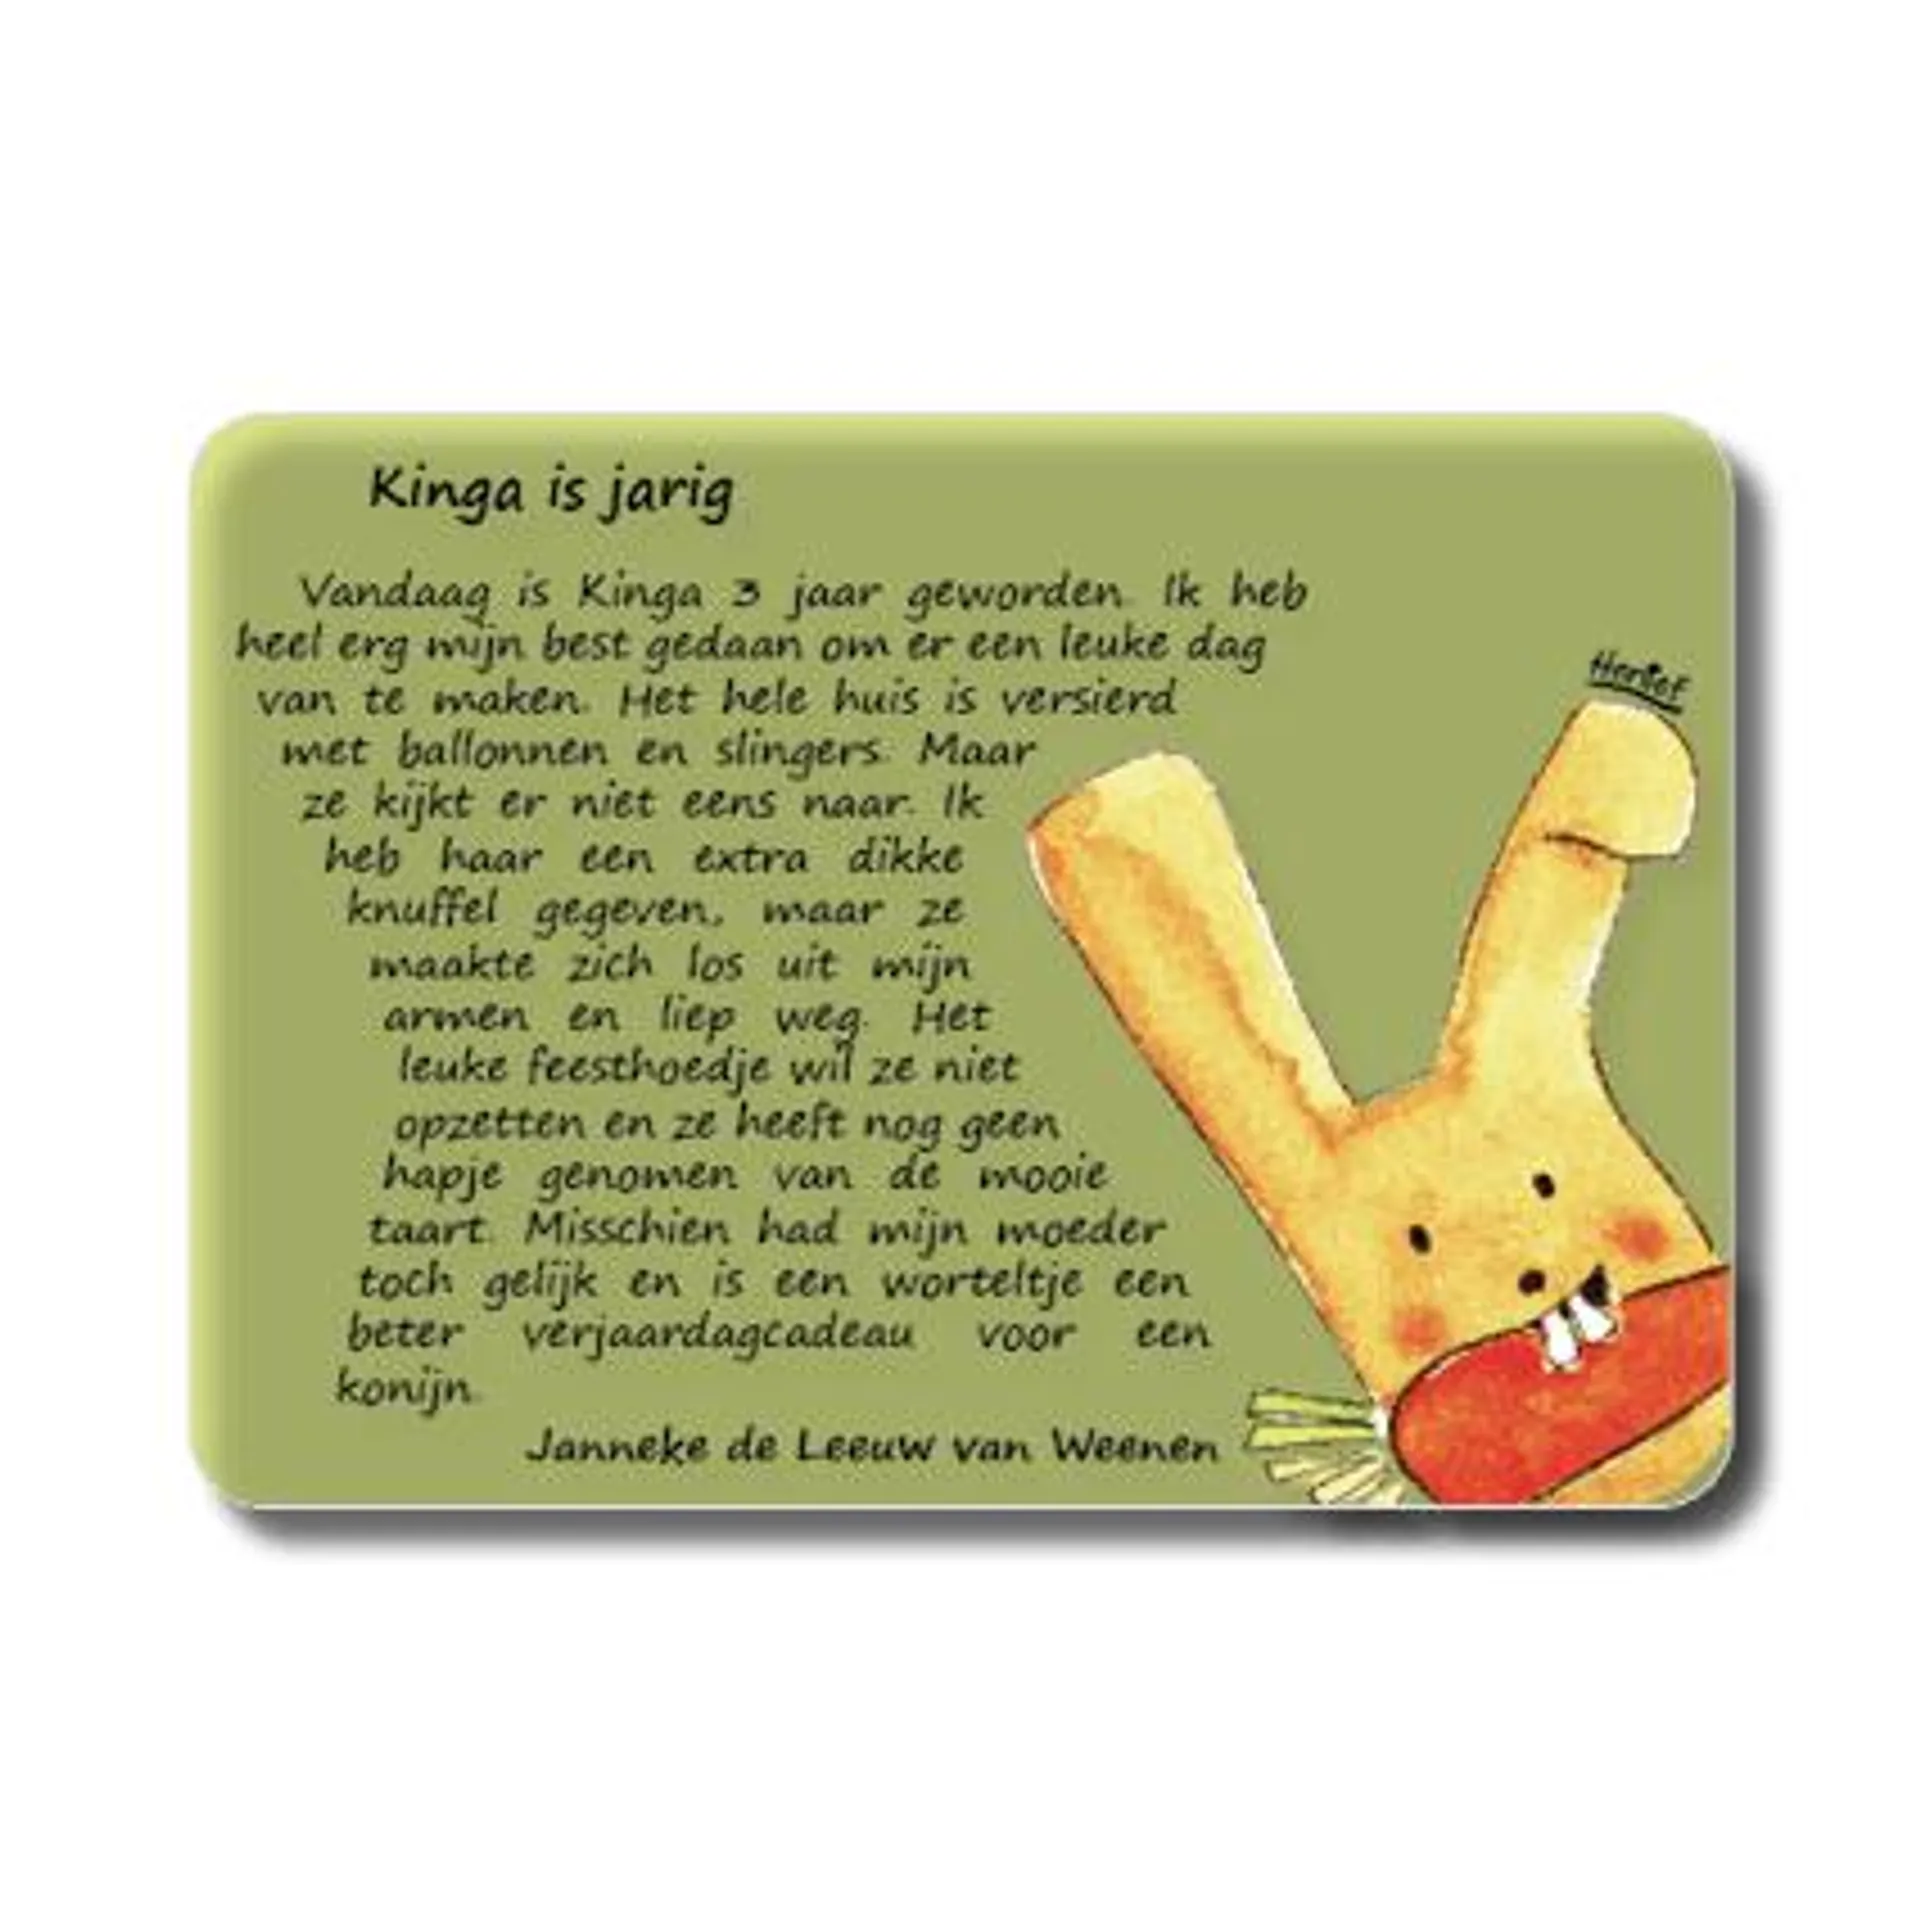 Kaart met het zeer korte verhaal ‘Kinga is Jarig’ van Janneke de Leeuw van Weenen